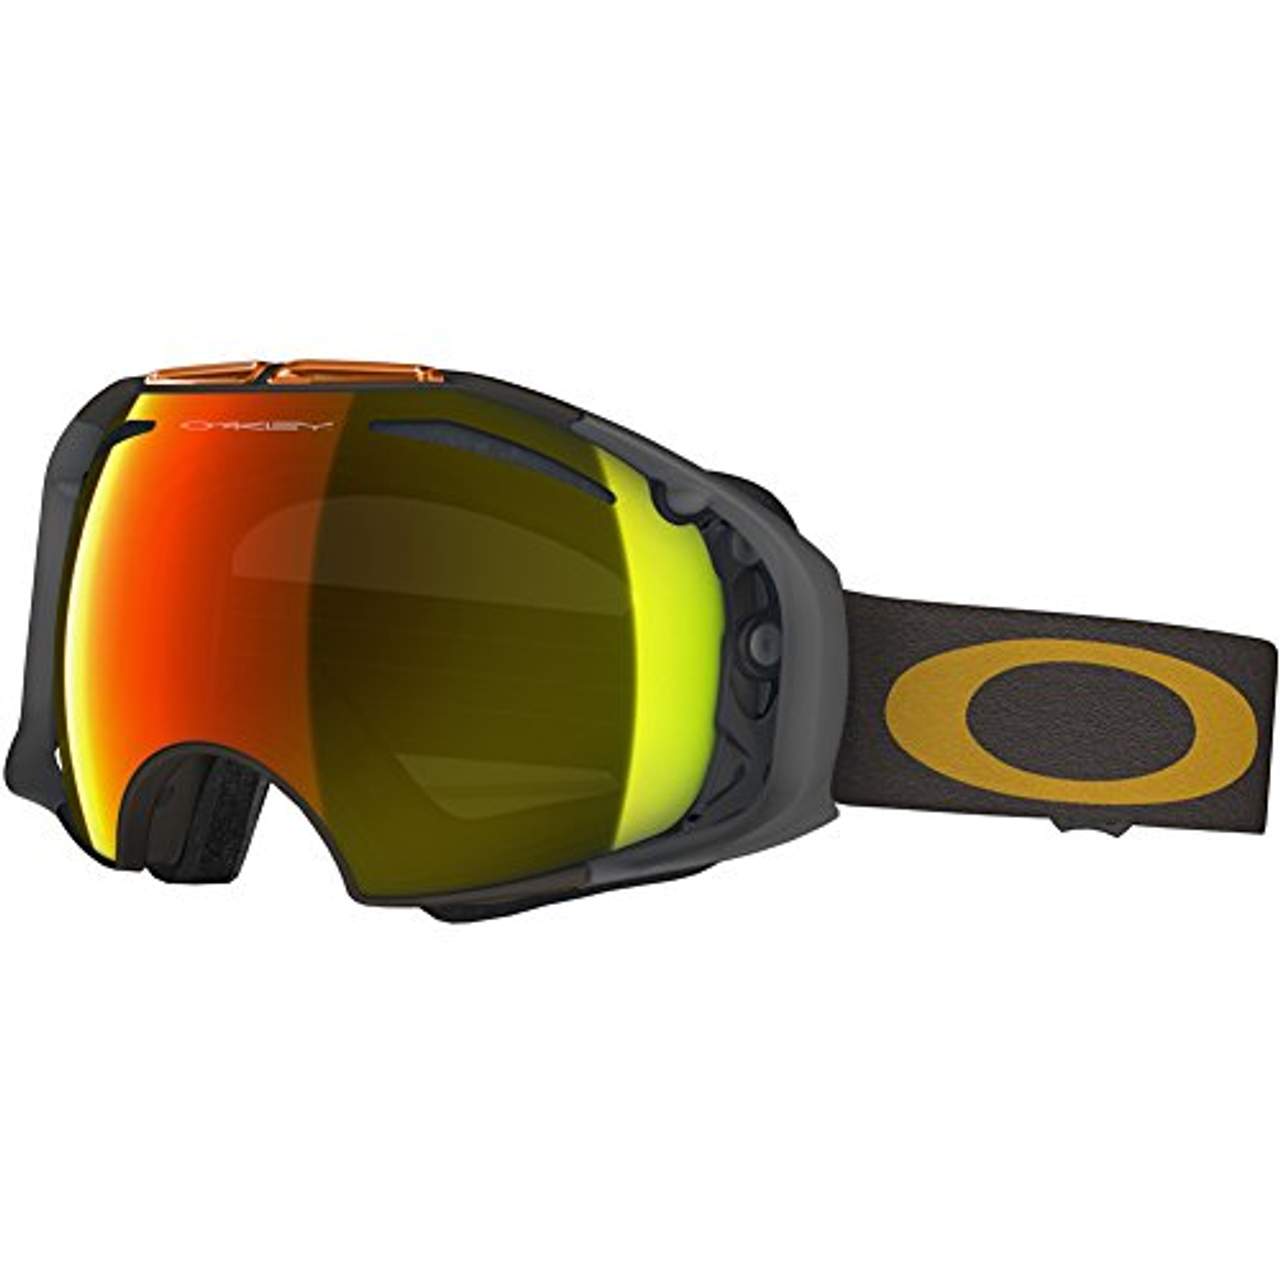 Skibrille Test und Vergleich: Die besten Ski- und 